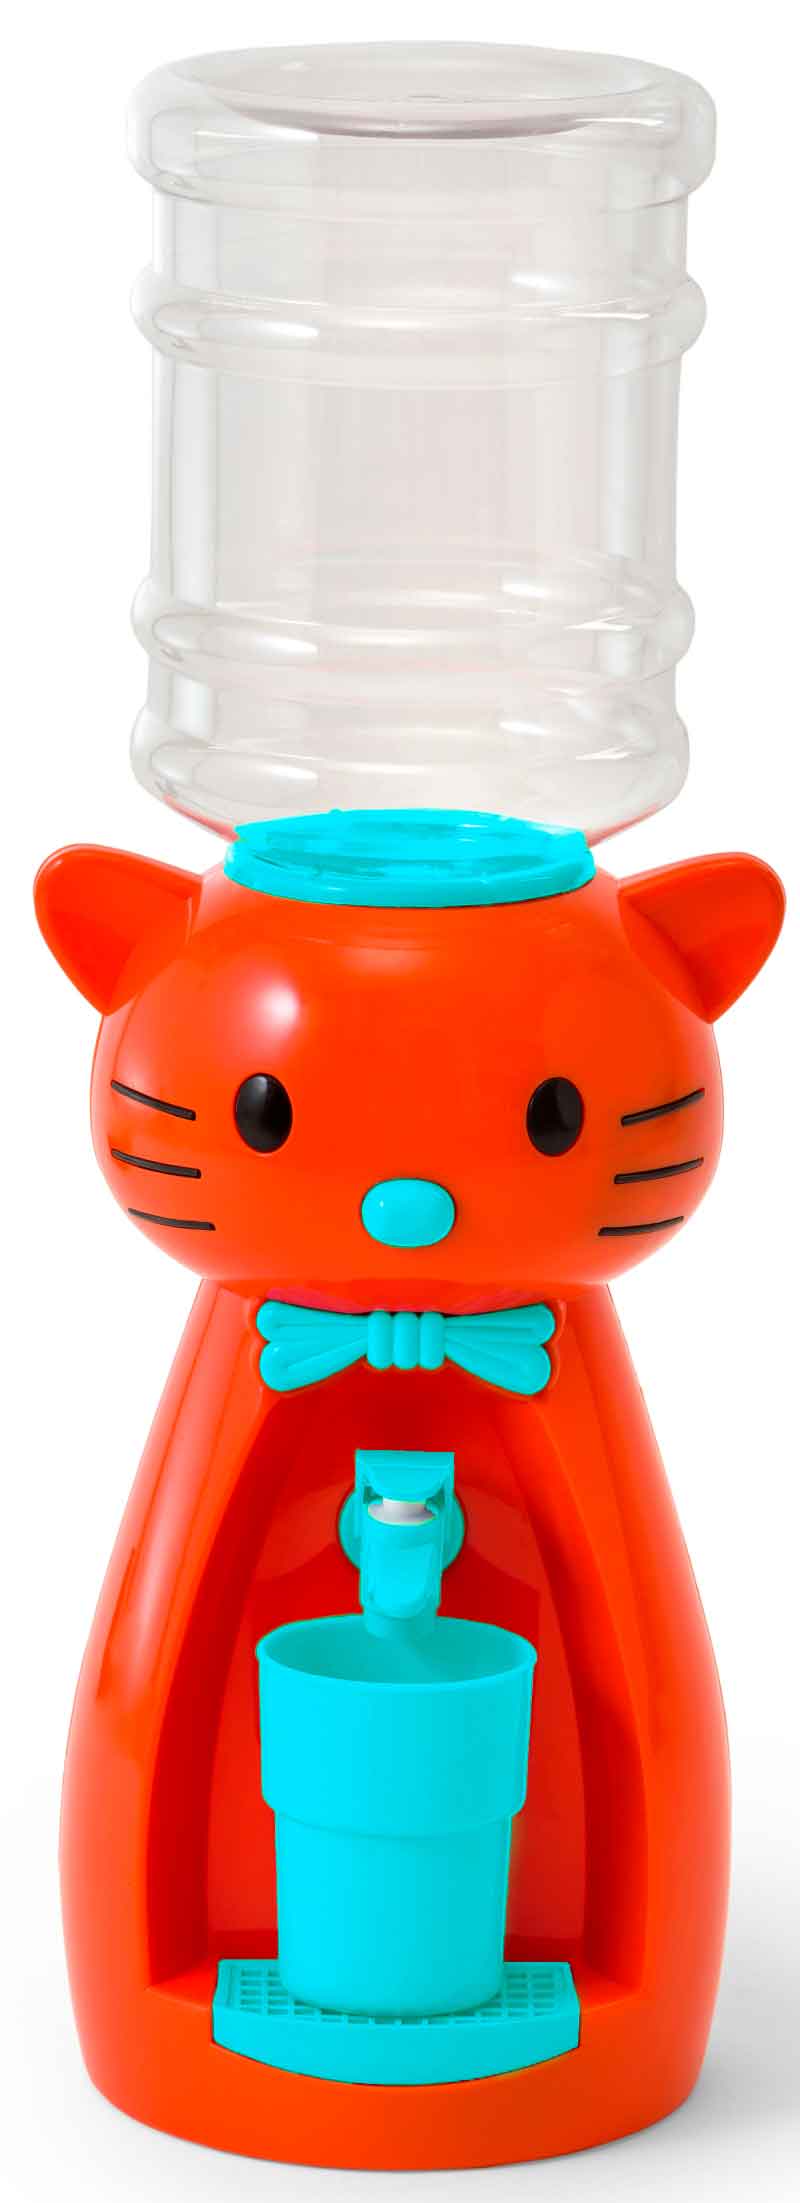 Детский кулер для воды VATTEN kids Kitty Orange по доступной цене в Москве от магазина "Море Воды"